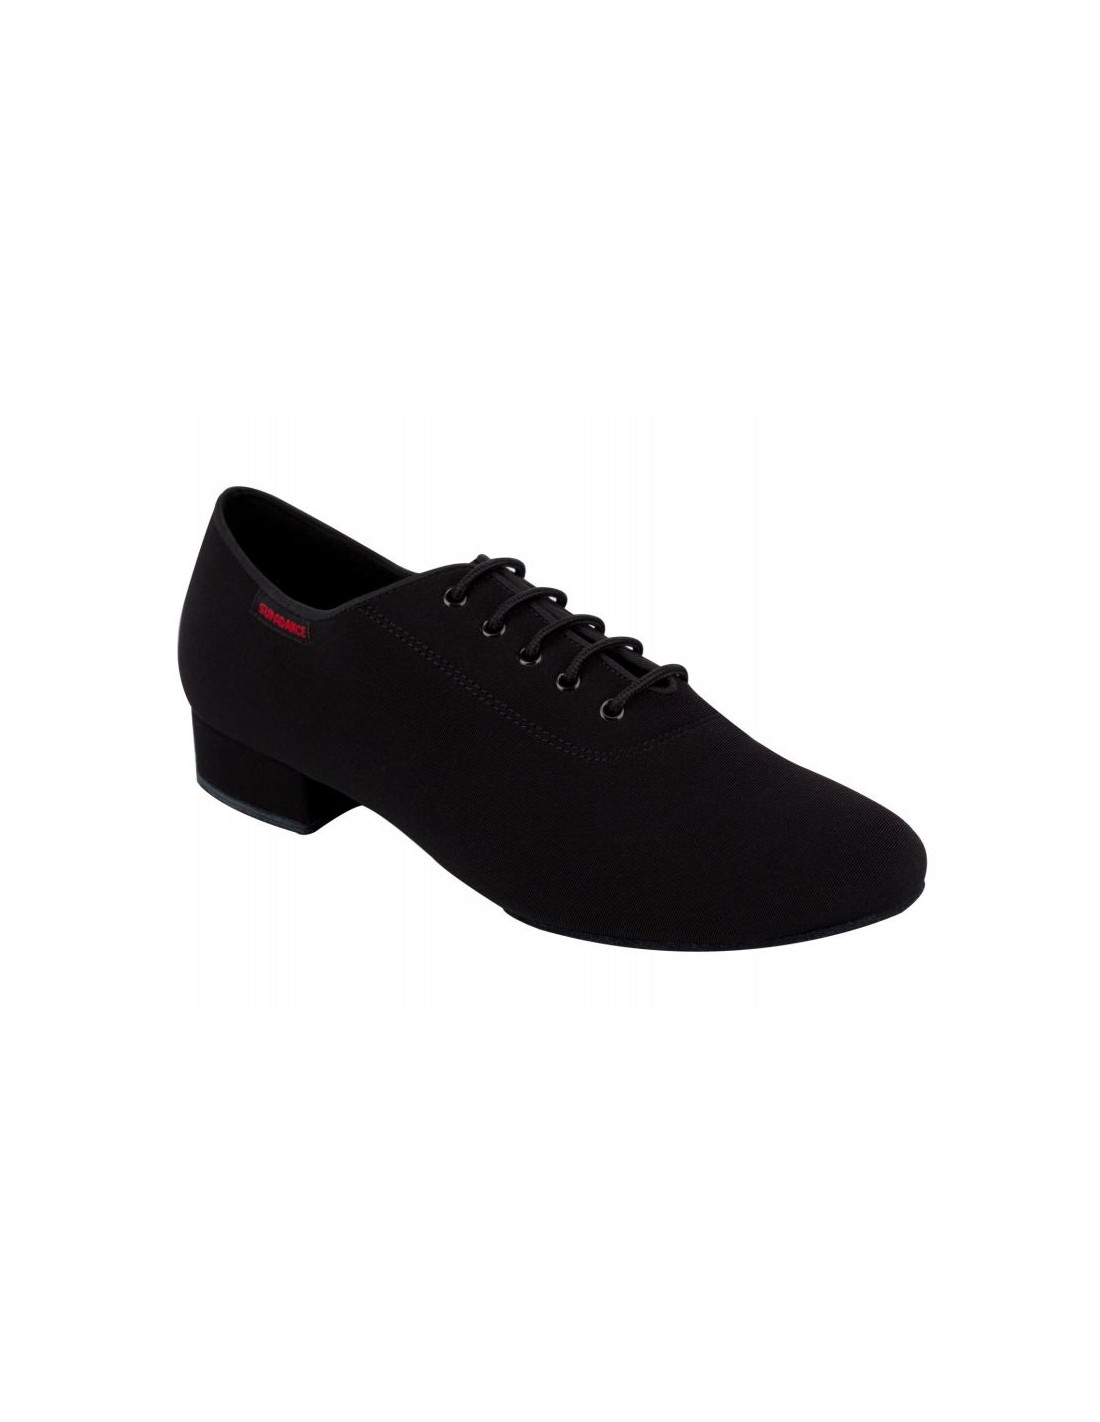 Comprar Online ZAPATO DE SEVILLANAS baratos y de calidad de la marca PASOS  DE BAILE, Zapatos low cost